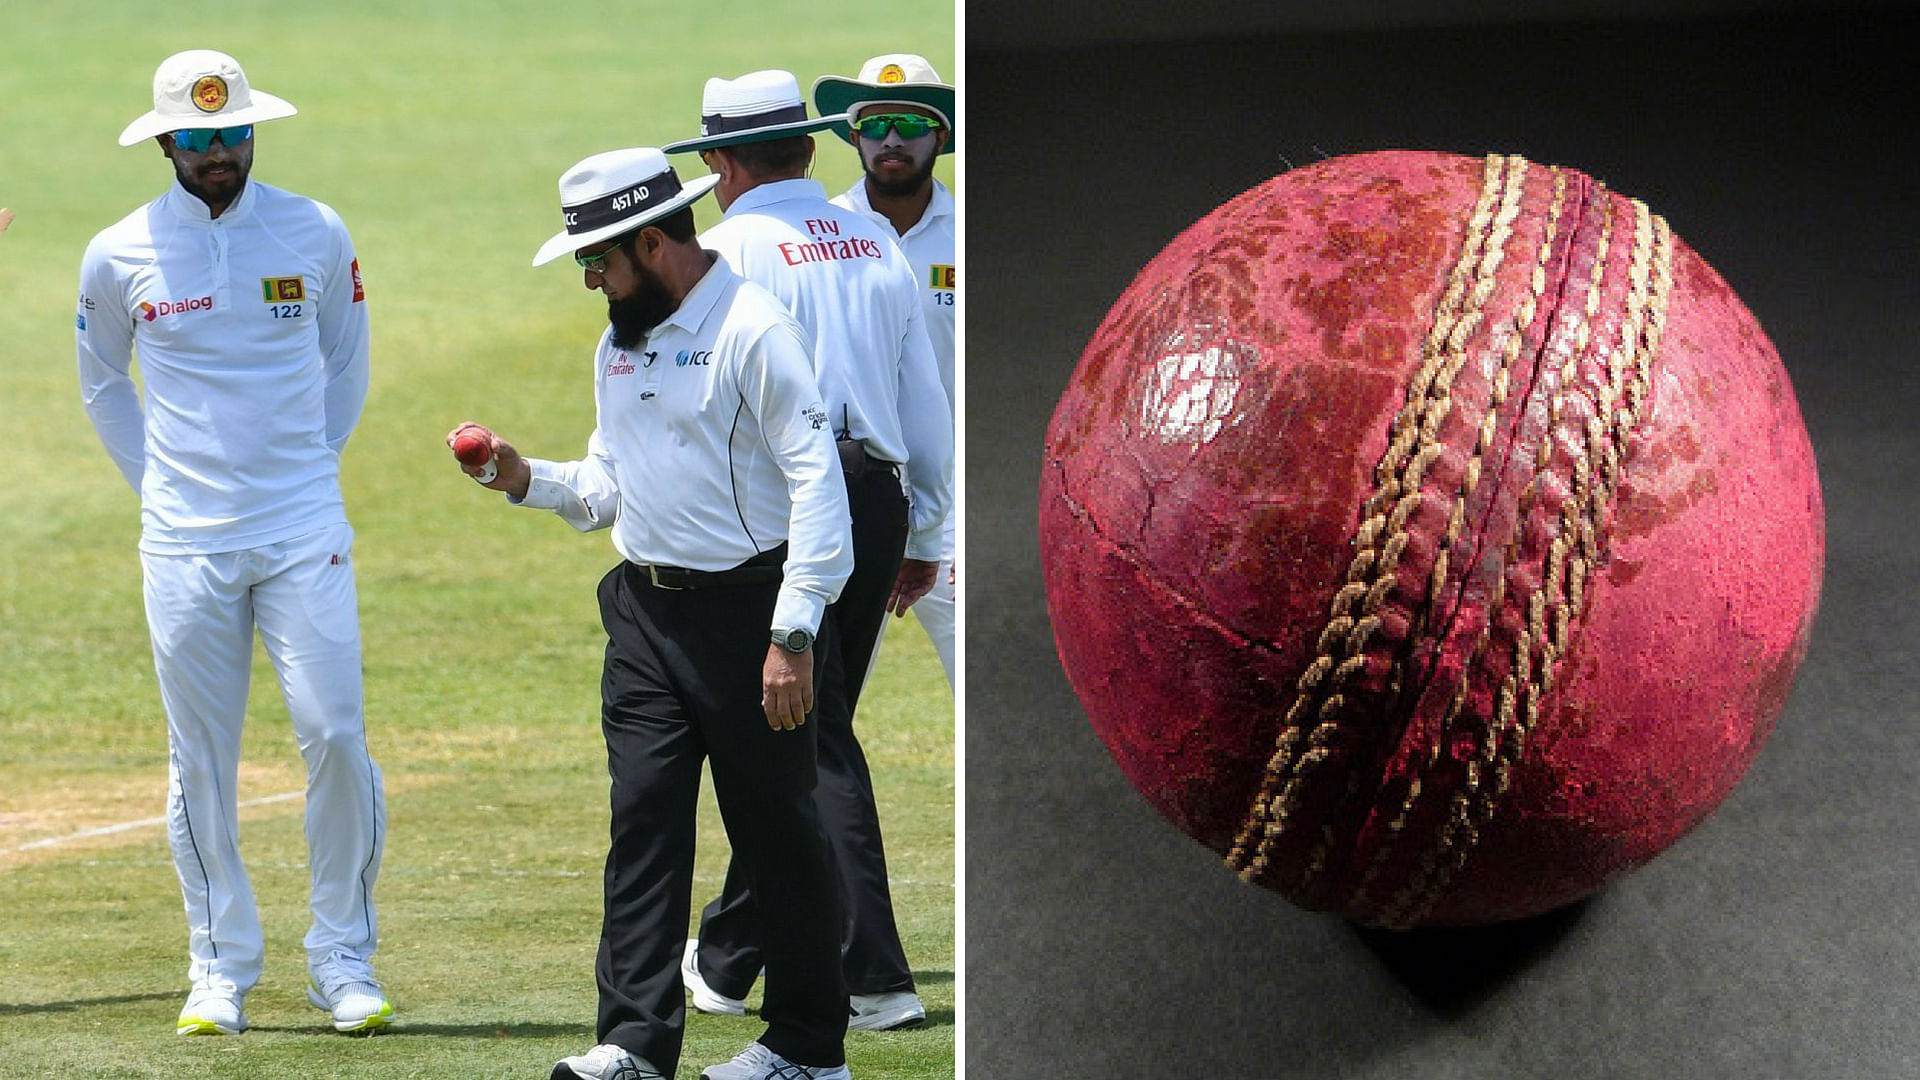 वेस्टइंडीज के खिलाफ खेलते हुए श्रीलंका के कप्तान दिनेश चांदीमल पर बॉल टैंपरिंग का आरोप लगा है